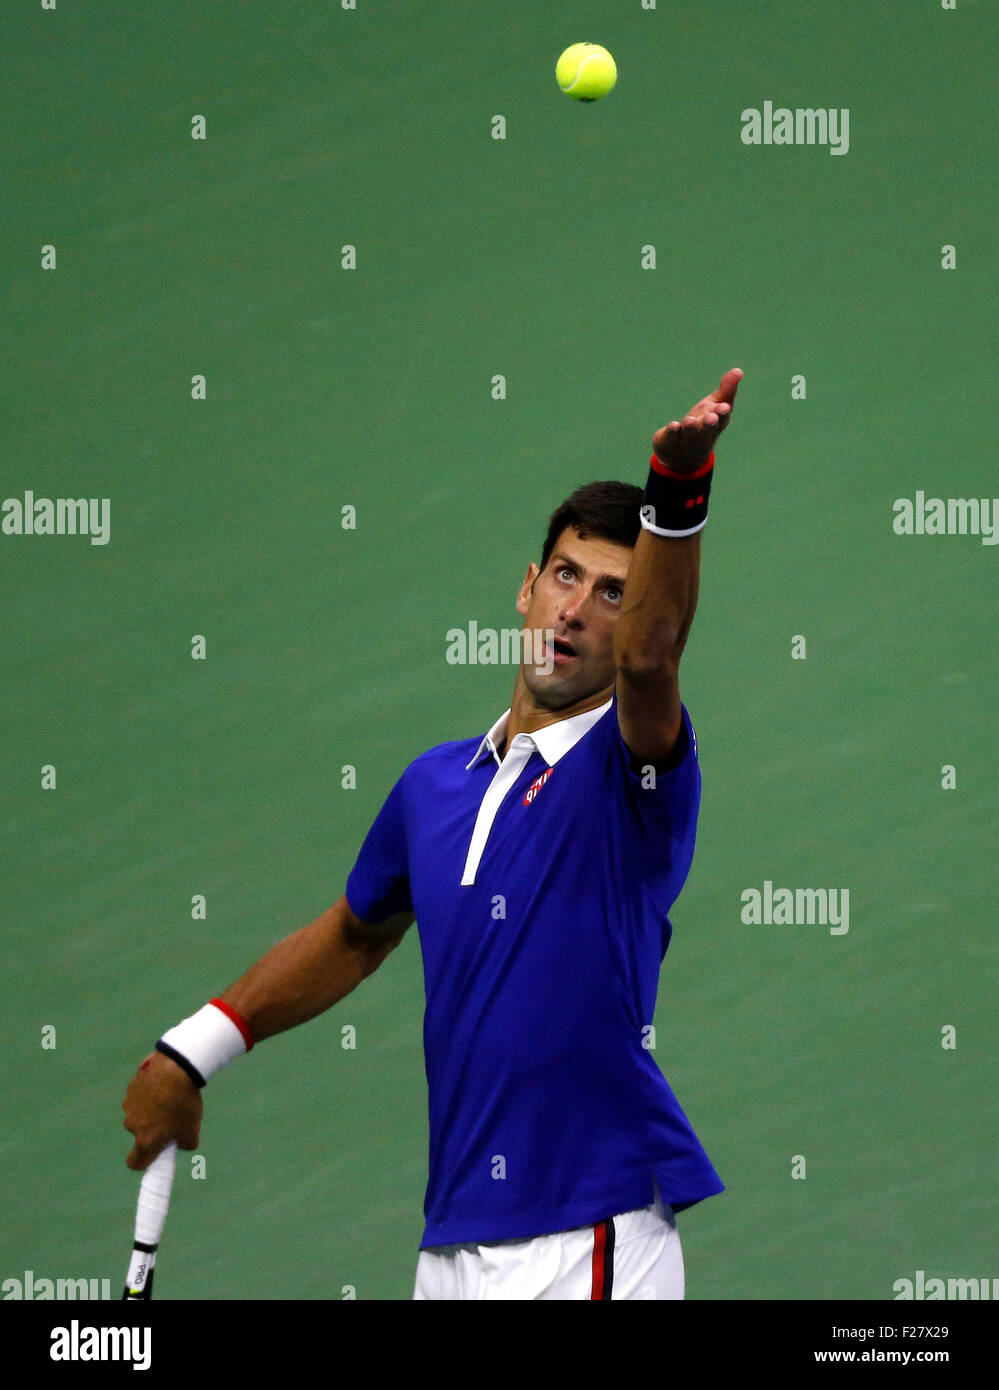 New York, USA. 13 Sep, 2015. Novak Djokovic la Serbie de sert à Roger Federer de la Suisse pendant leur masculin finale à l'US Open 2015 à New York, États-Unis, le 13 septembre, 2015. Credit : Qin Lang/Xinhua/Alamy Live News Banque D'Images